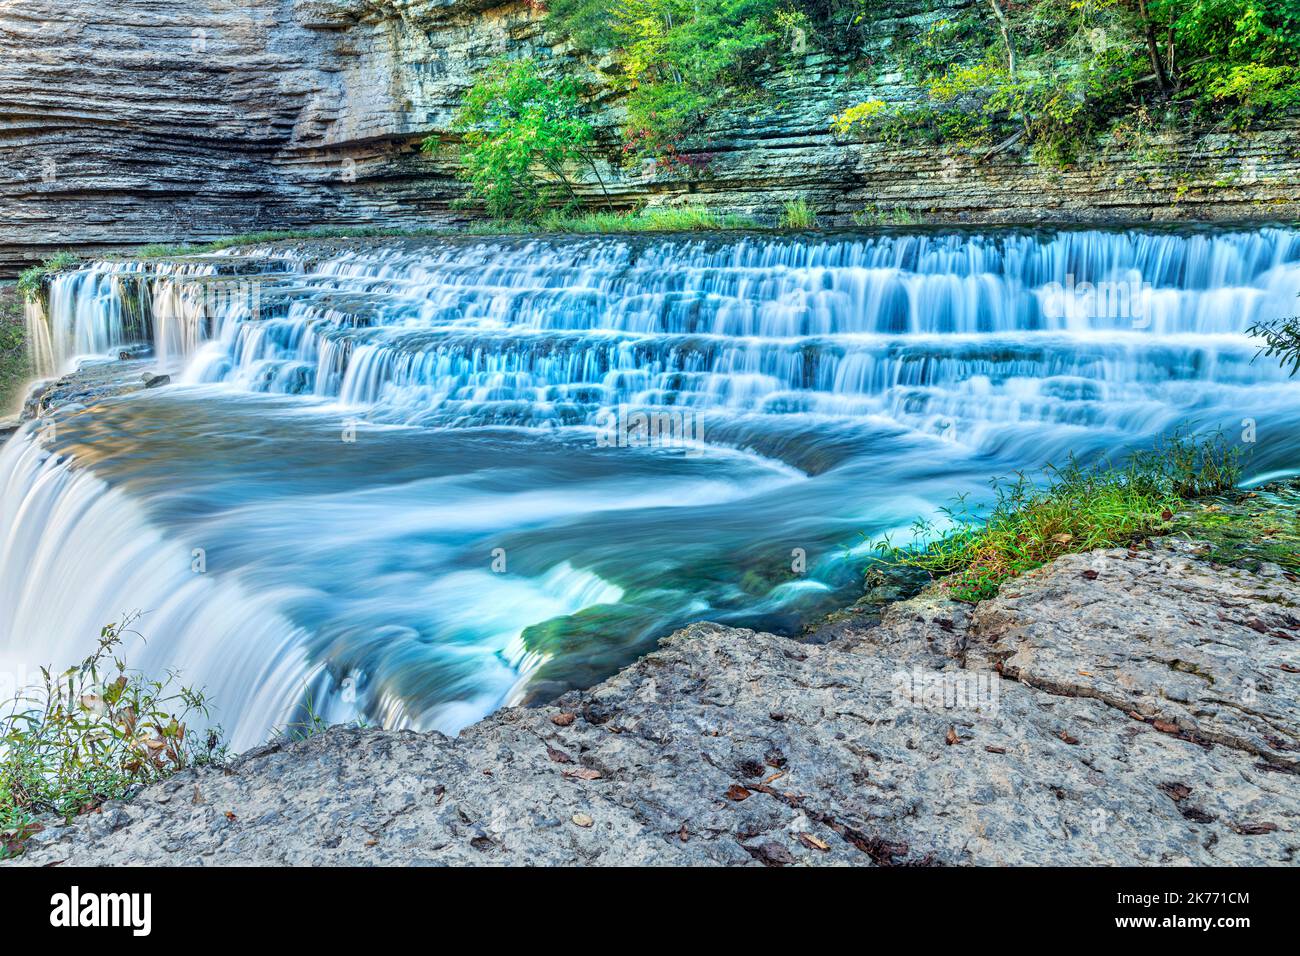 Una impresionante y hermosa cascada escalonada con una velocidad de obturación lenta para capturar el movimiento fluye río abajo a una cascada más grande en Burges de Tennessee Foto de stock